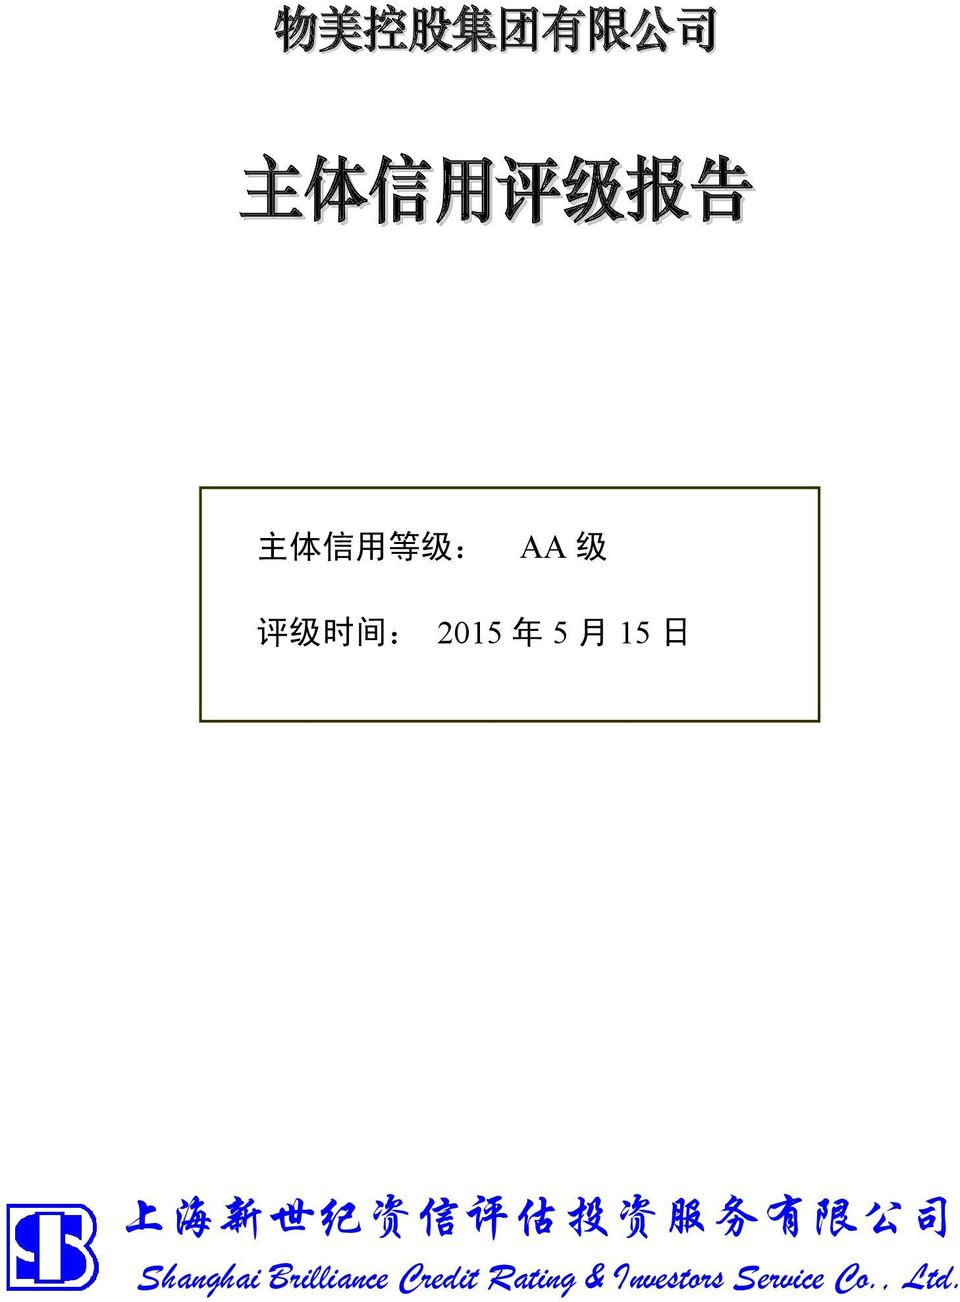 2015 年 5 月 15 日 上 海 新 世 纪 资 信 评 估 投 资 服 务 有 限 公 司